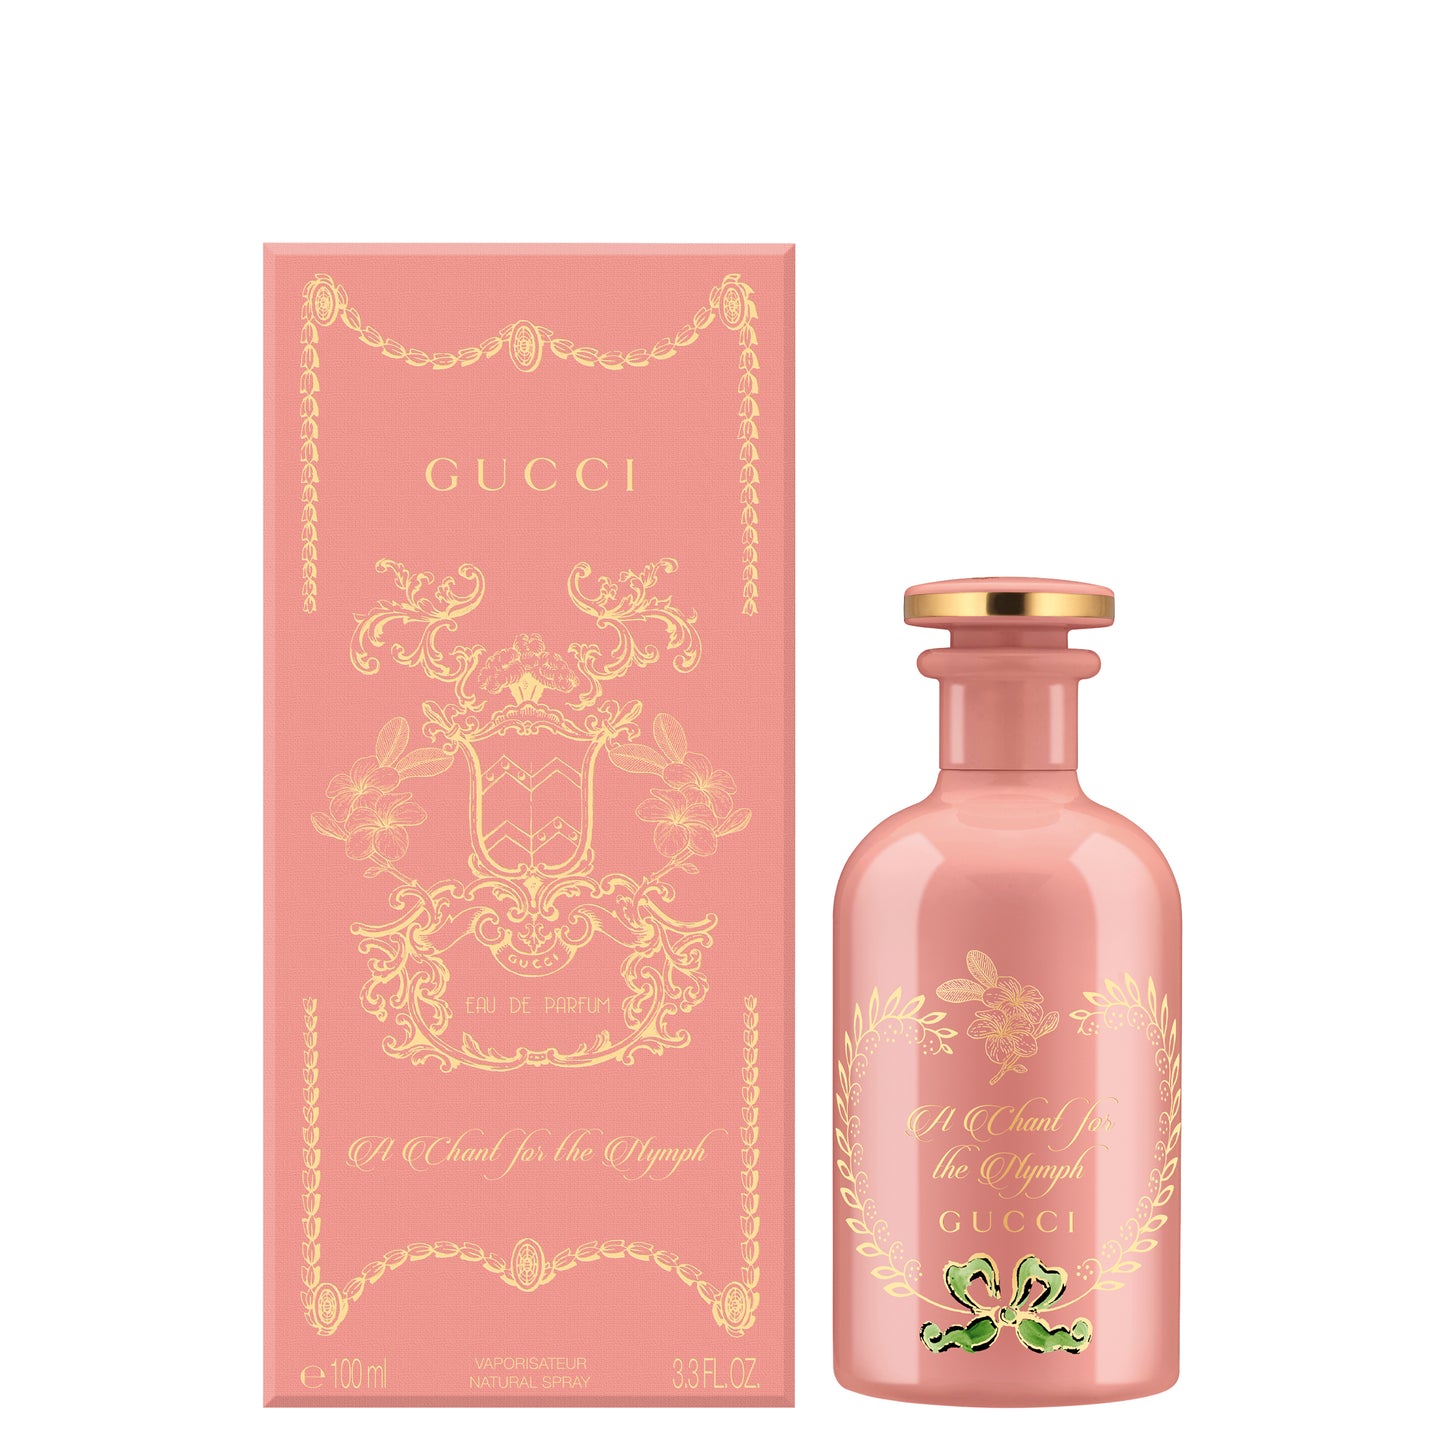 Gucci Alchemist Garden Frangipani Eau de parfum 100 ML